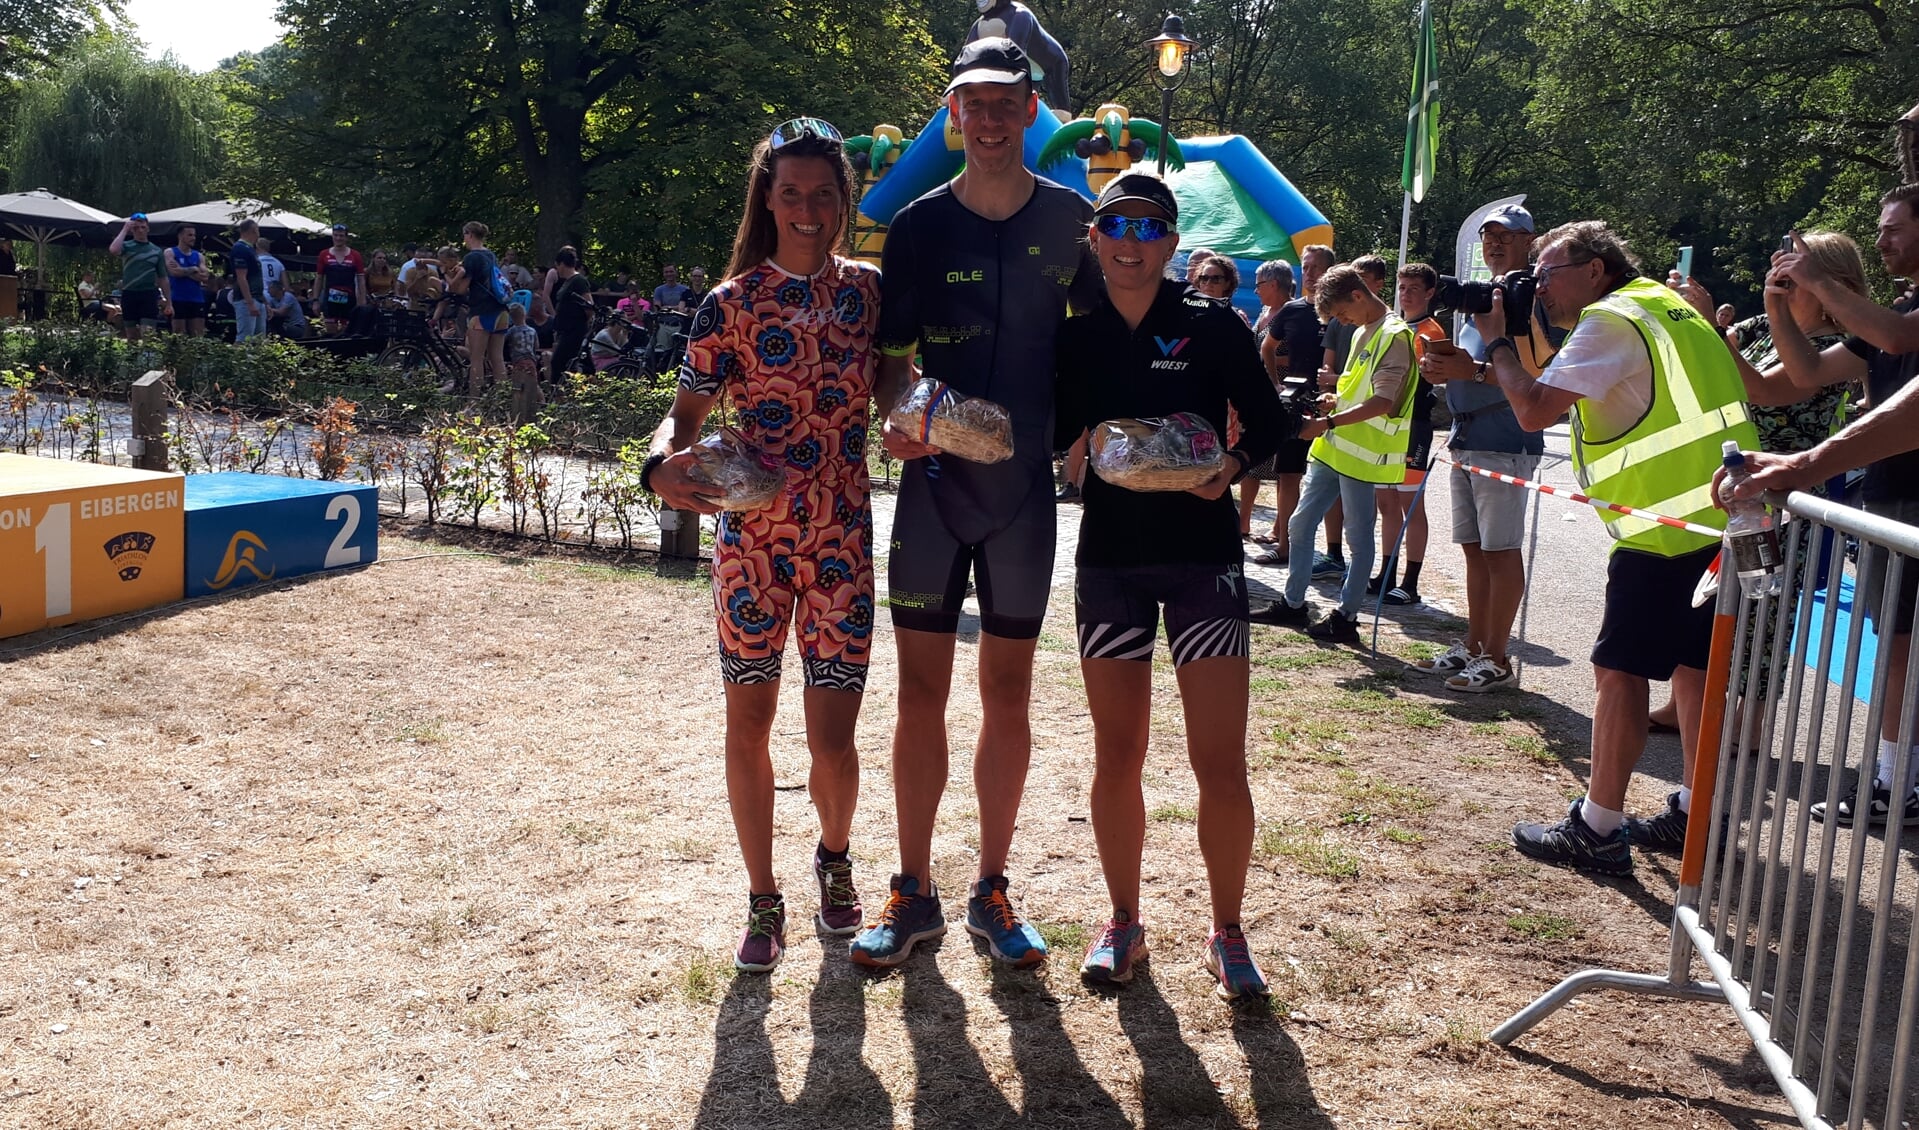 Aaltense winnaars bij triathlon Eibergen.: Cindy Brusse (l), Danny Boom (m) en Bianca Piek (r))